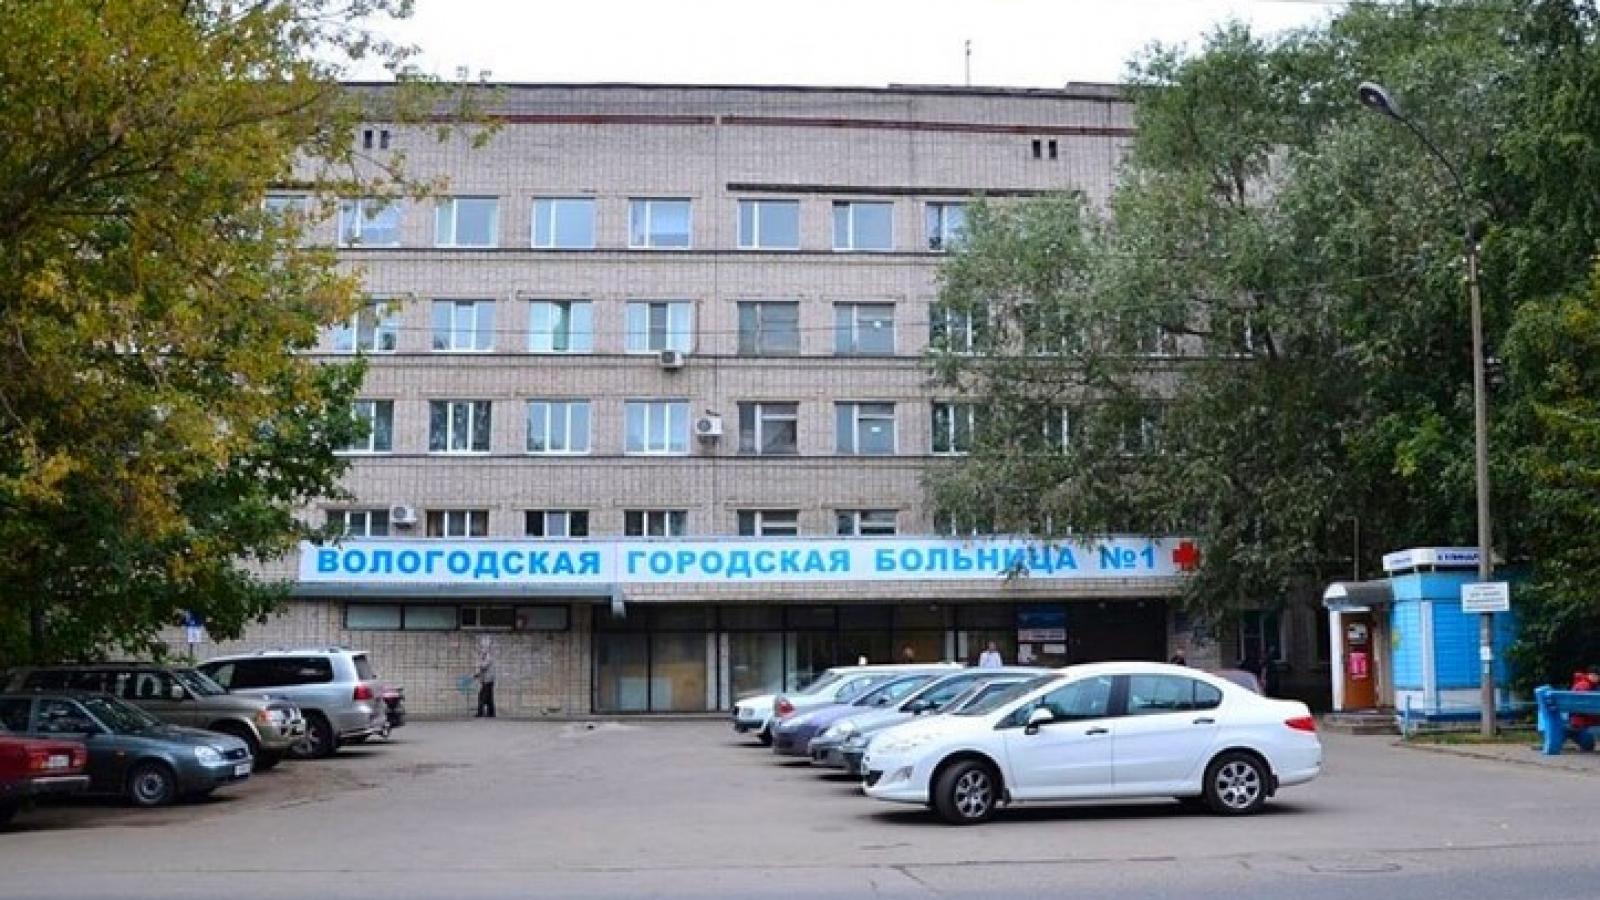 Вологодская городская больница 1